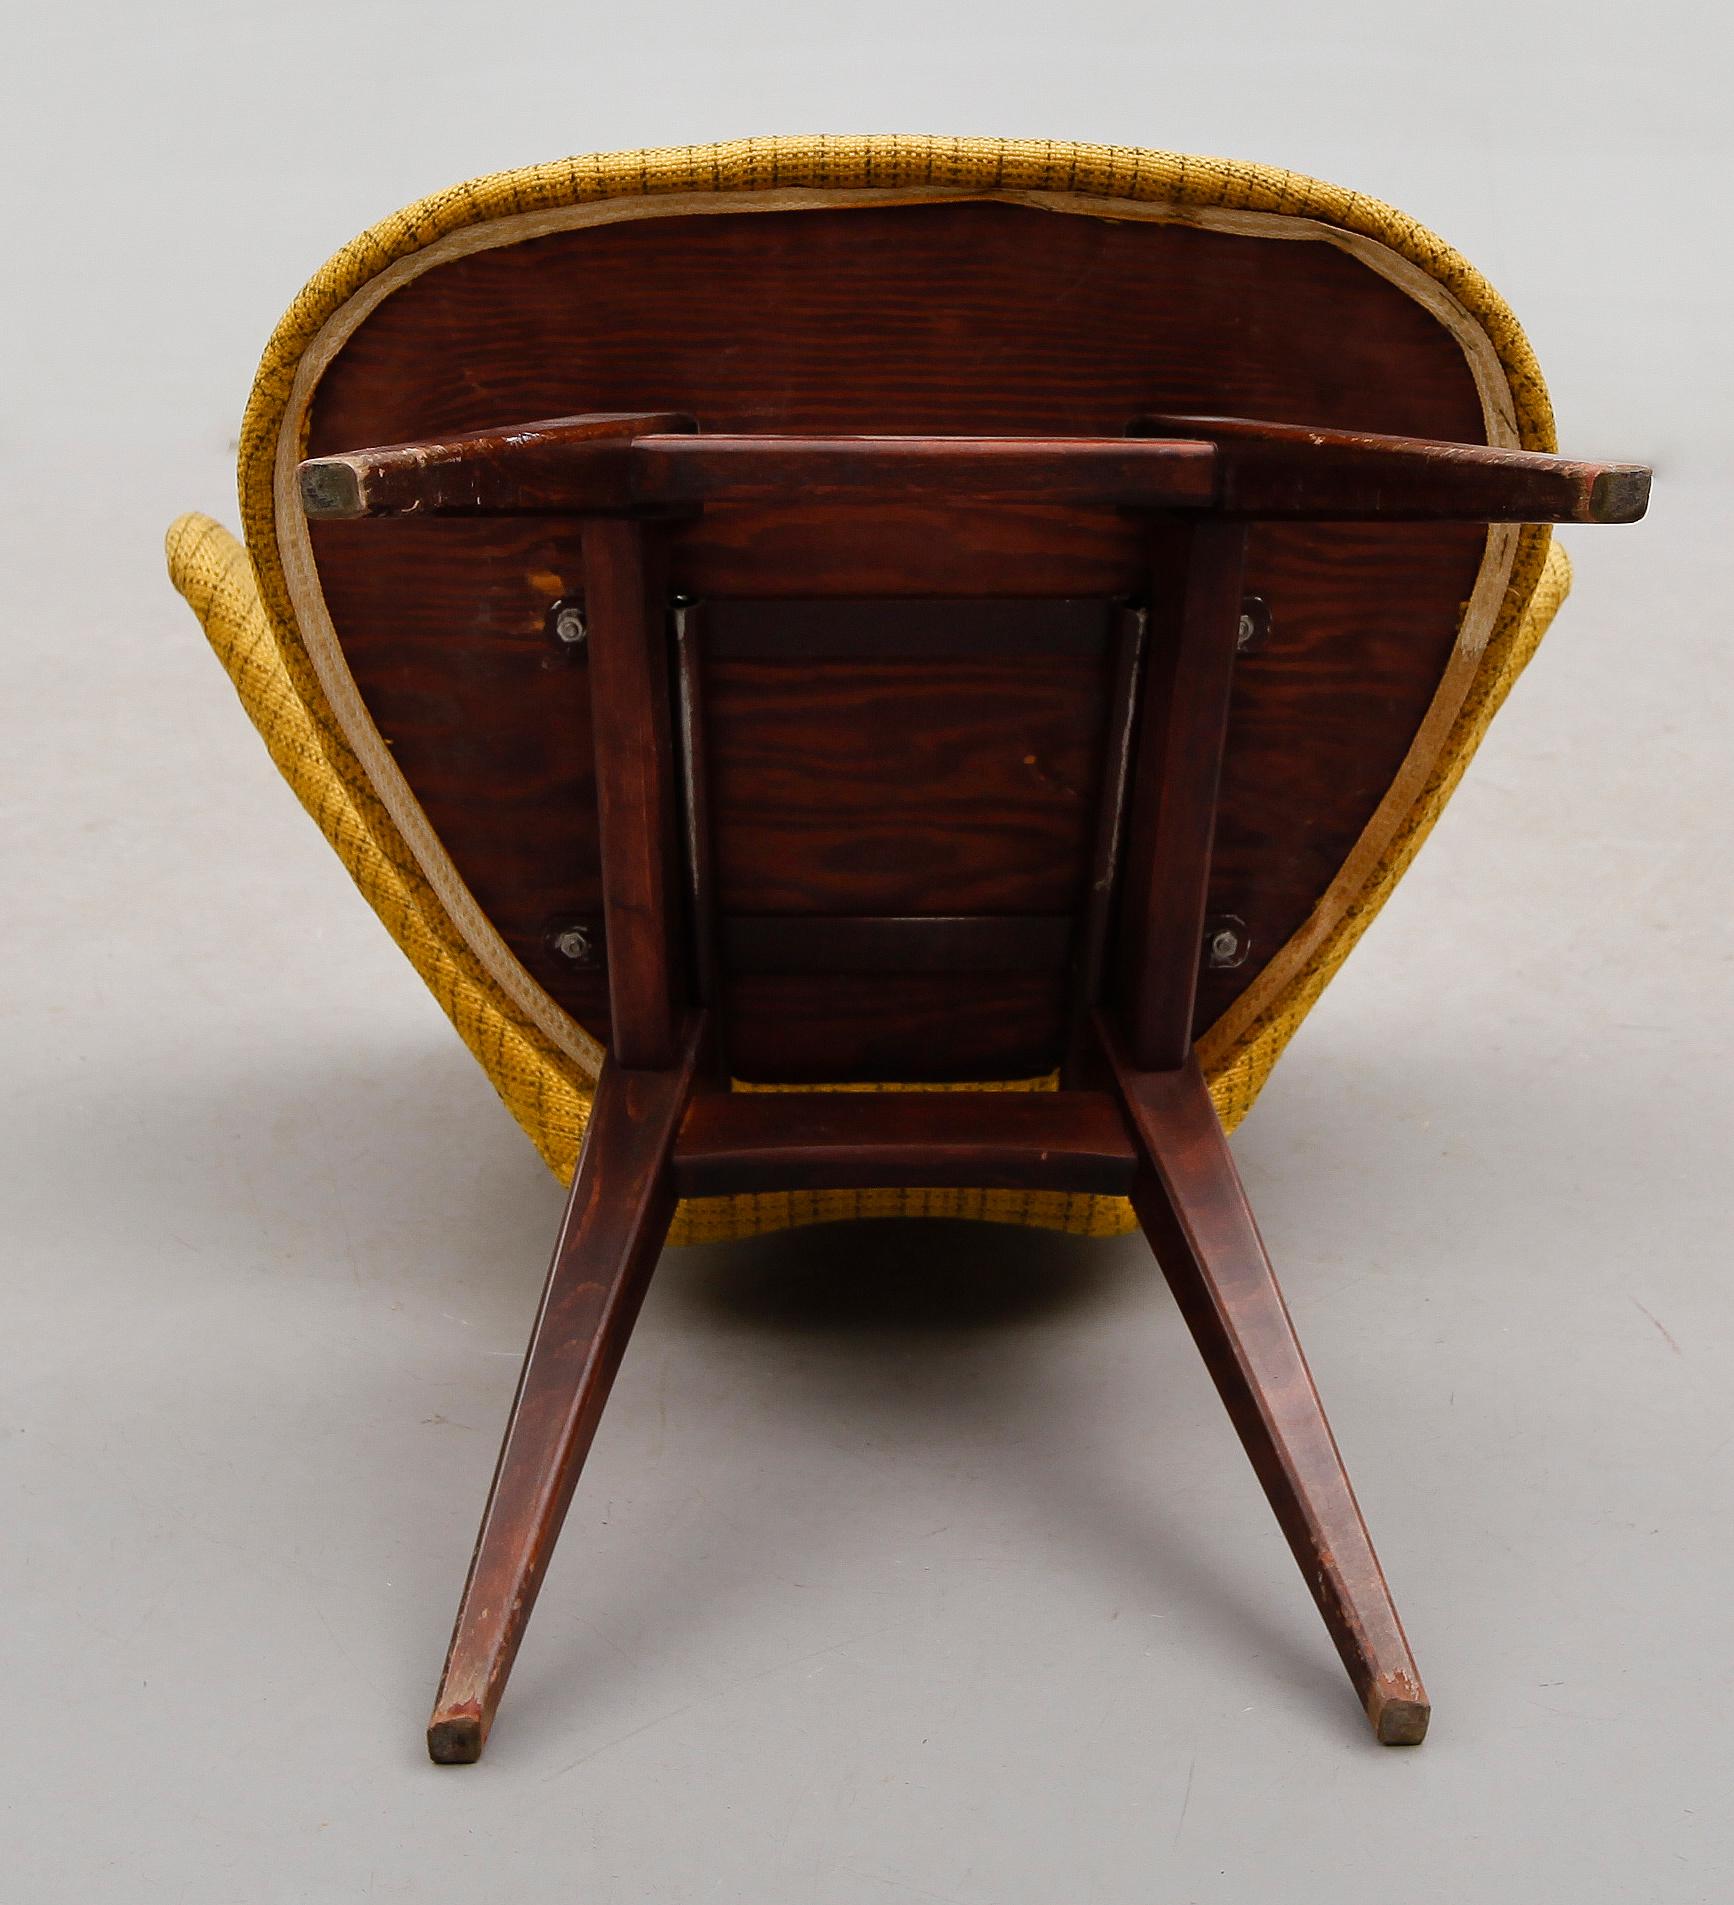 Sigfrid Ljungqvist Ohrensessel für Mobelfabrik, Schweden, 1950
Dieser seltene Stuhl wurde hergestellt von  Möbelfabrik in Habo, Schweden. Der Stuhl wurde als Modell Ving/300 bezeichnet und 1958 produziert. Die flügelförmige Rückenlehne mit ihren